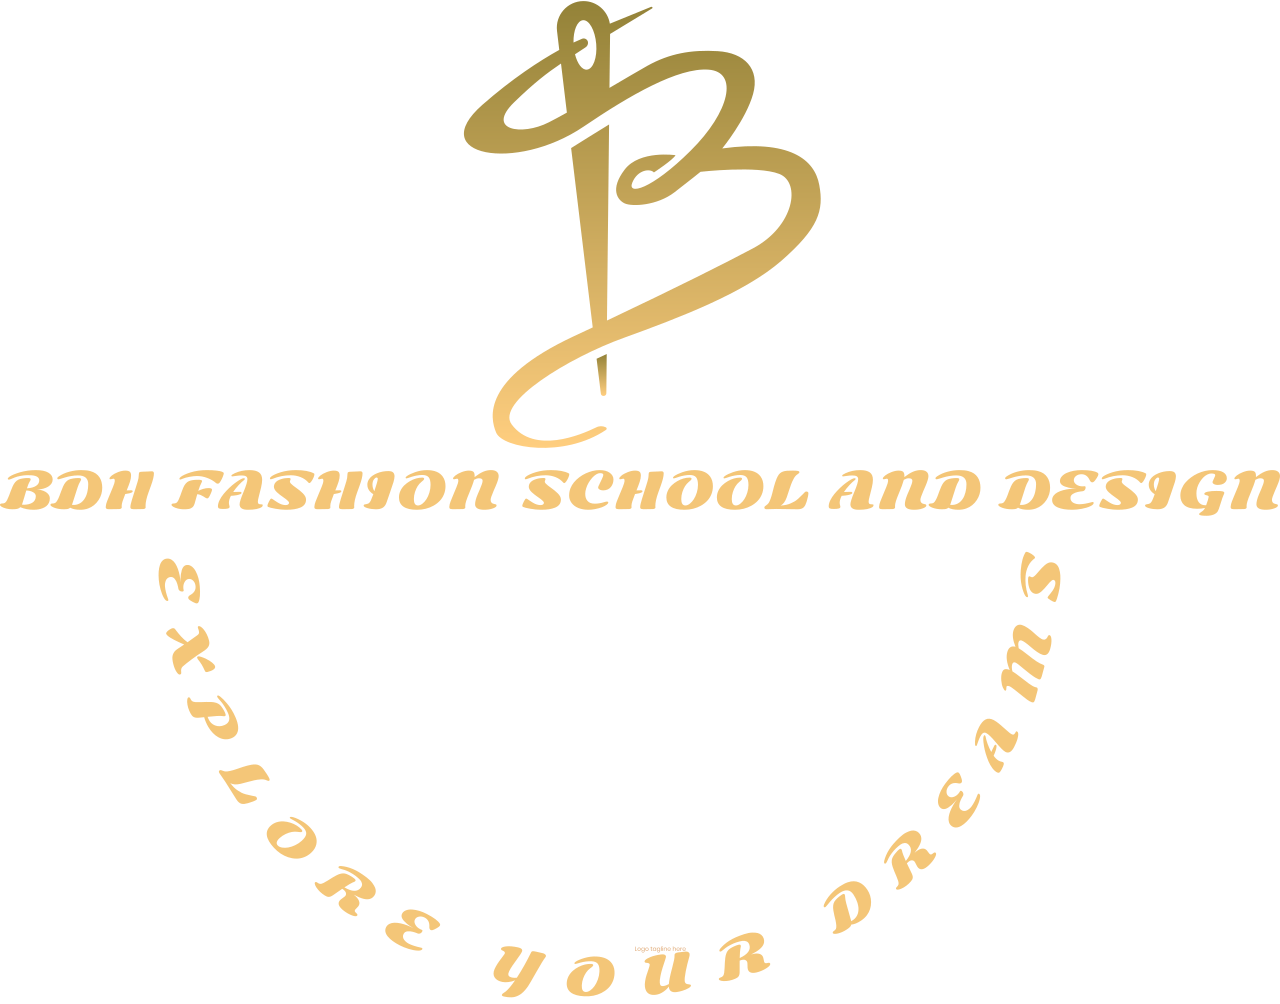 BDH FASHION SCHOOL AND DESIGN's logo